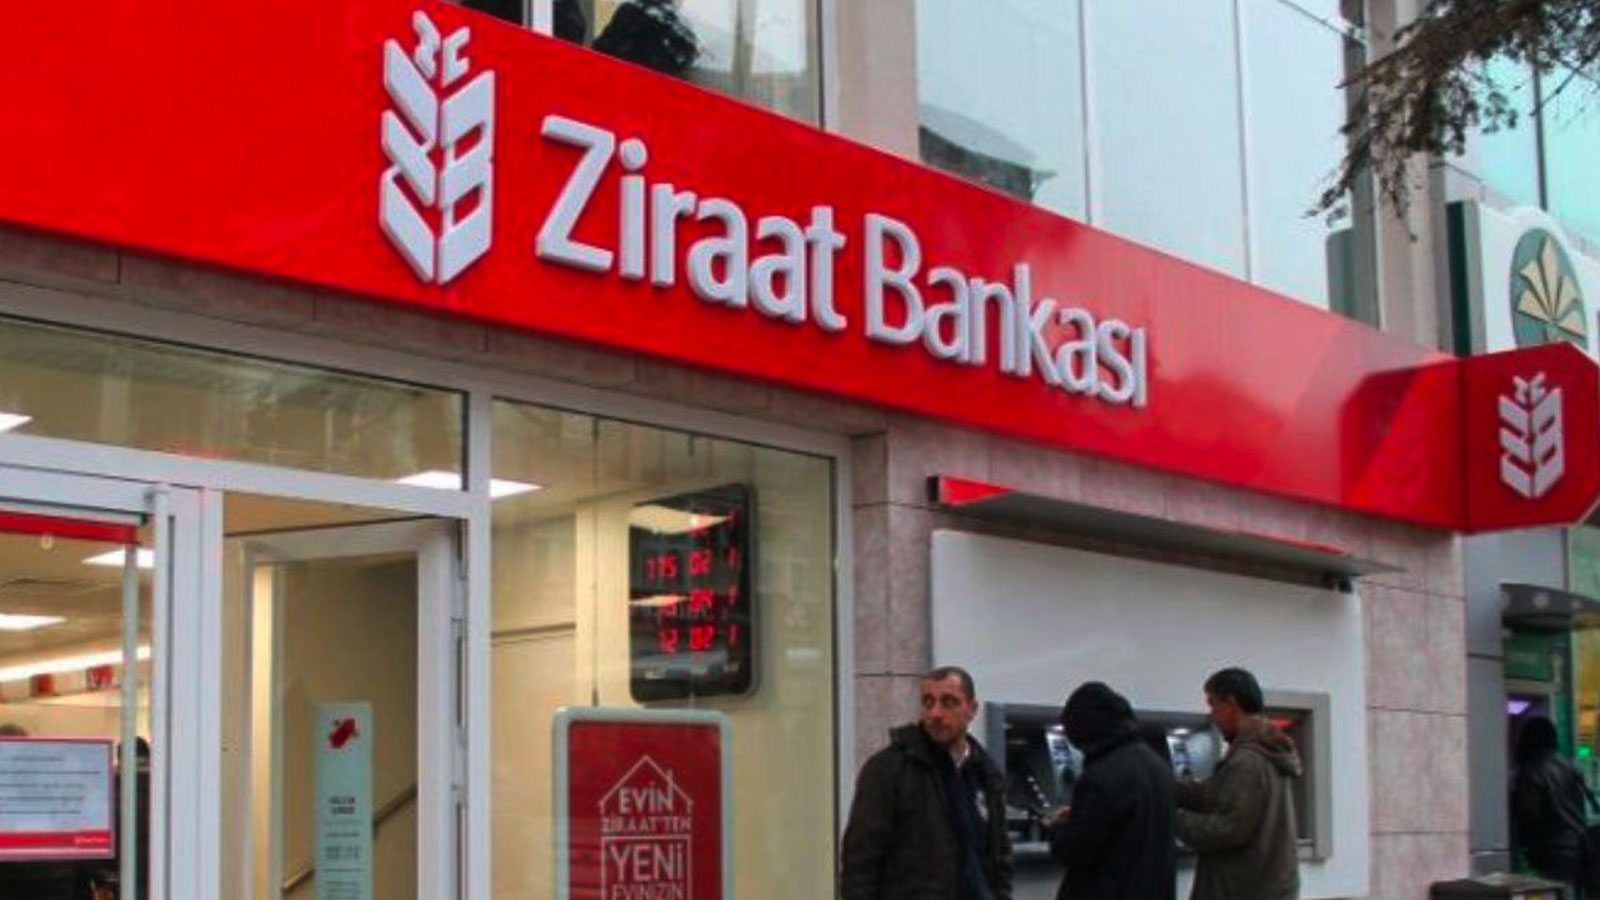 Ziraat Bankası ndan 577 personel alımı: Ziraat Bankası başvuru şartları nelerdir, nasıl başvurulur?